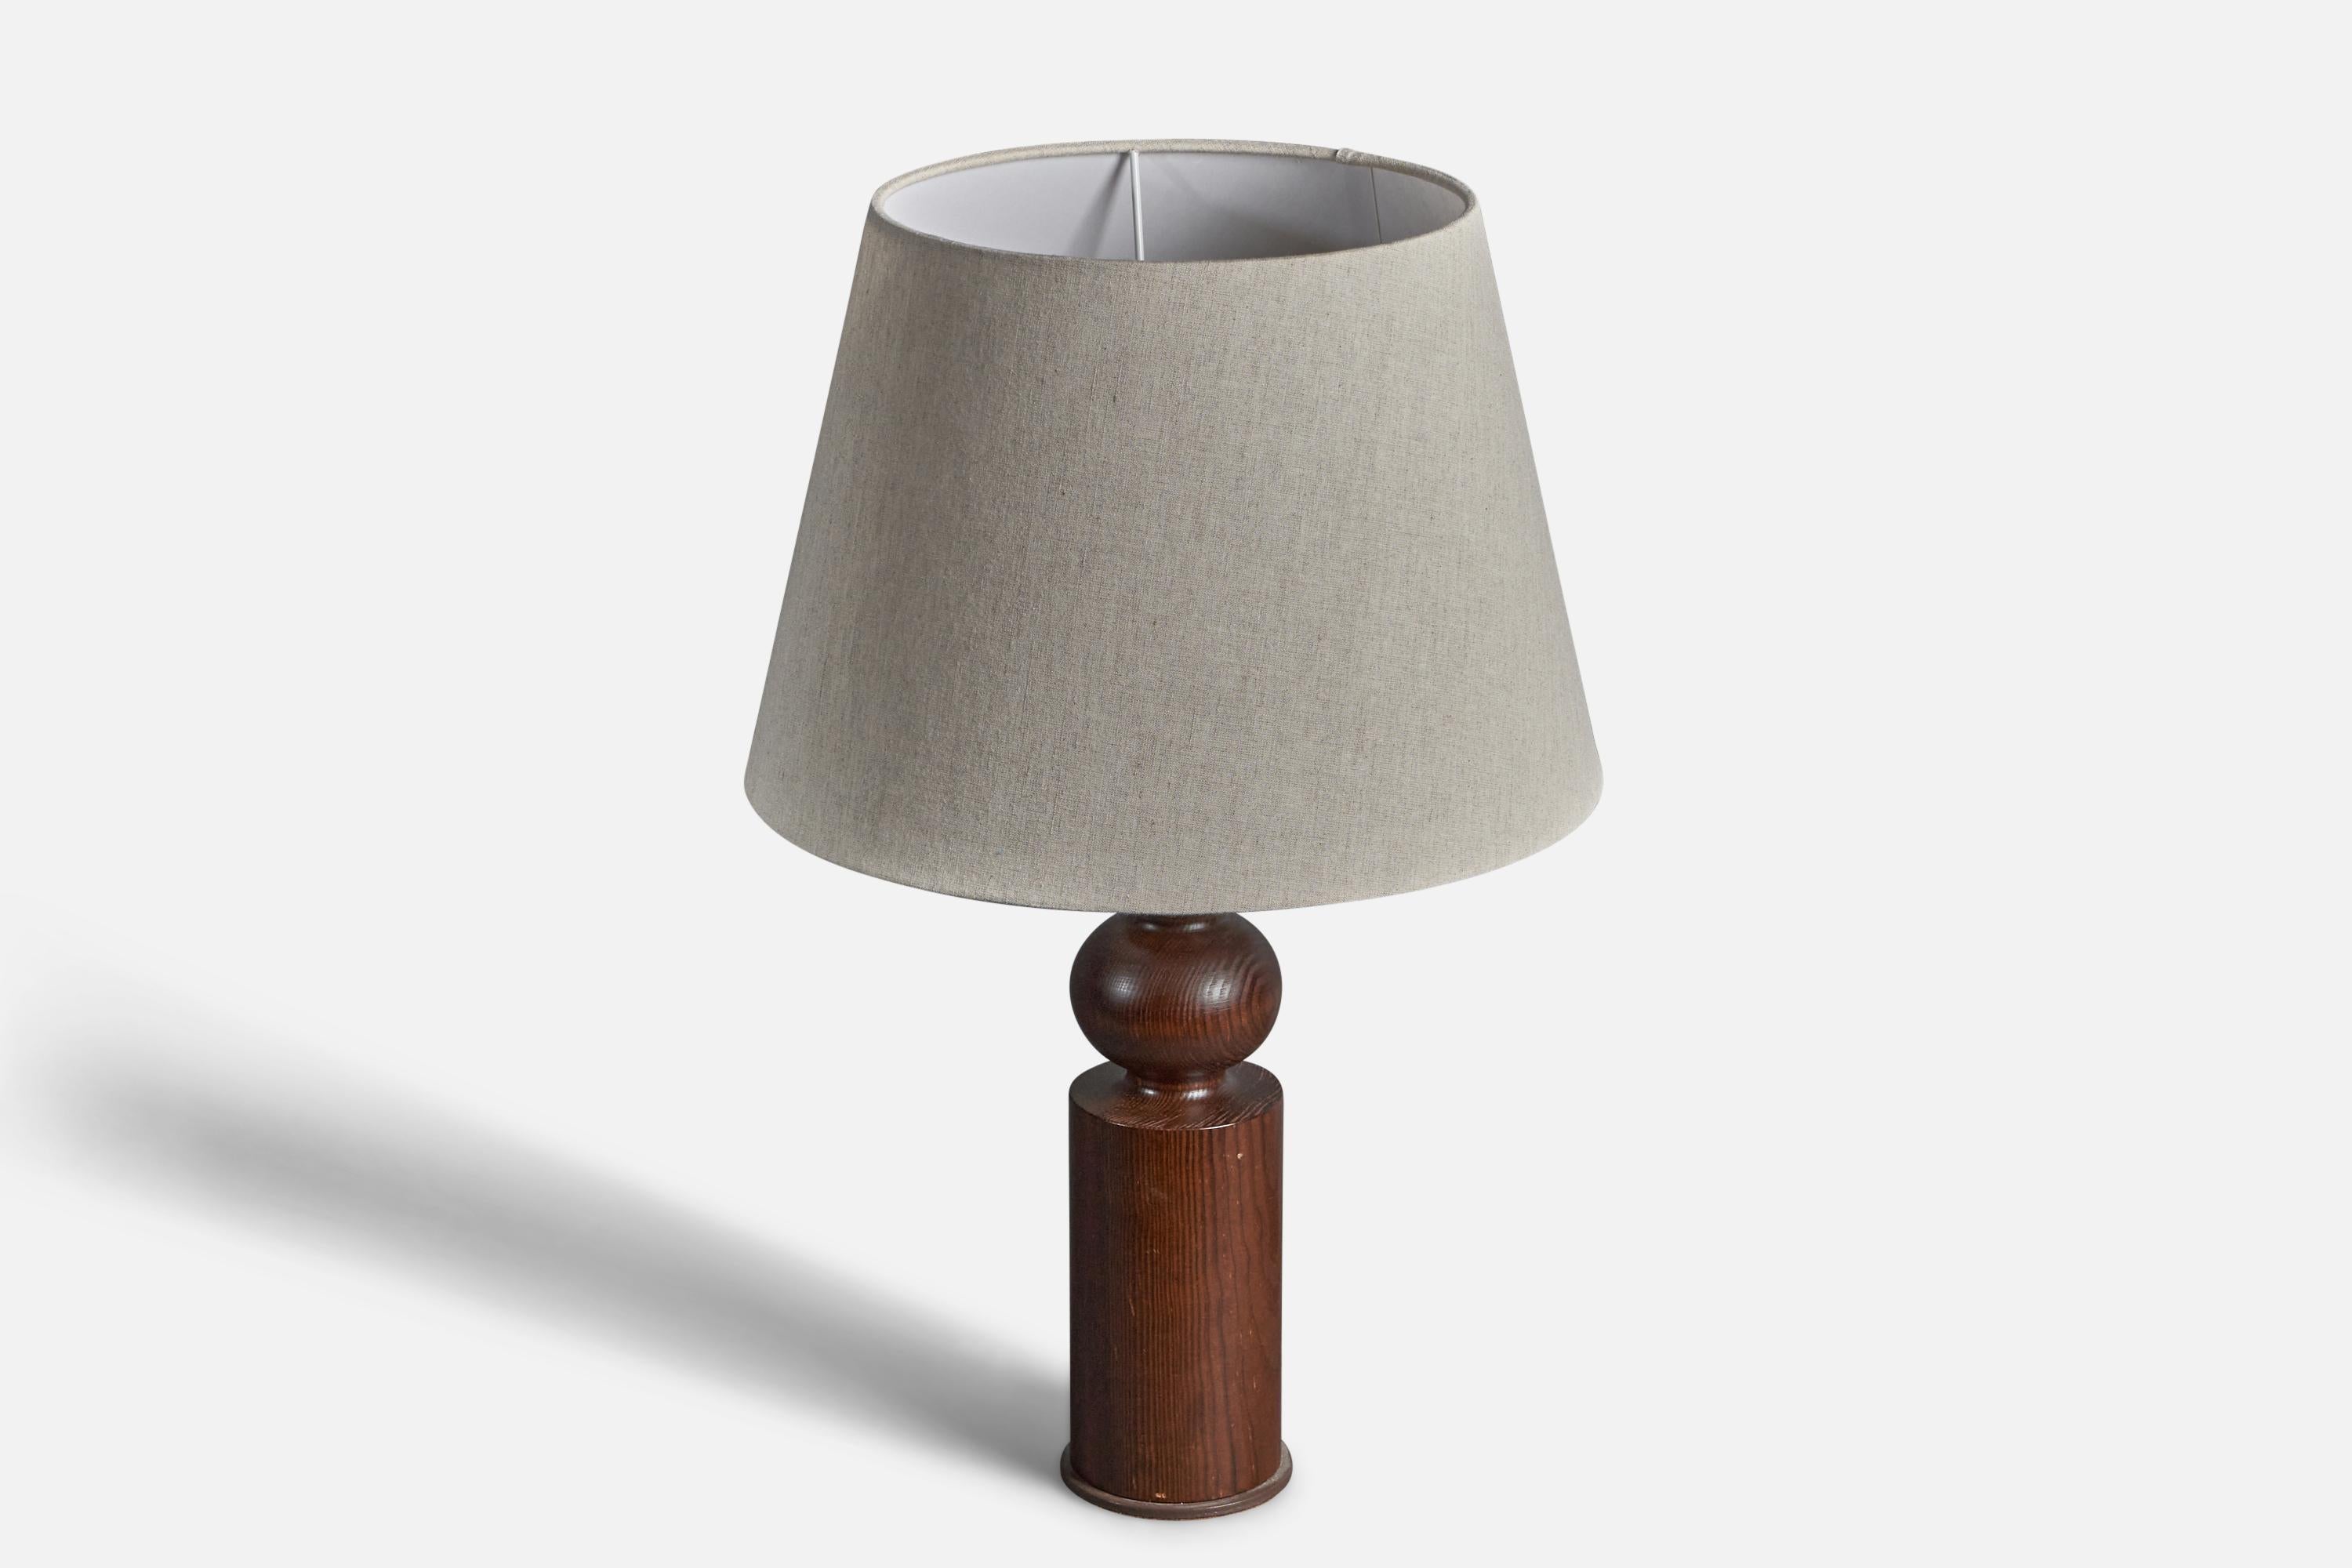 Une lampe de table sculpturale en pin massif. Conçu par Uno Kristiansson, pour Luxus, Suède, années 1970. Marqué et étiqueté. Pied en métal à la base.

Les dimensions indiquées ne comprennent pas l'abat-jour, la hauteur comprend la douille. Vendu